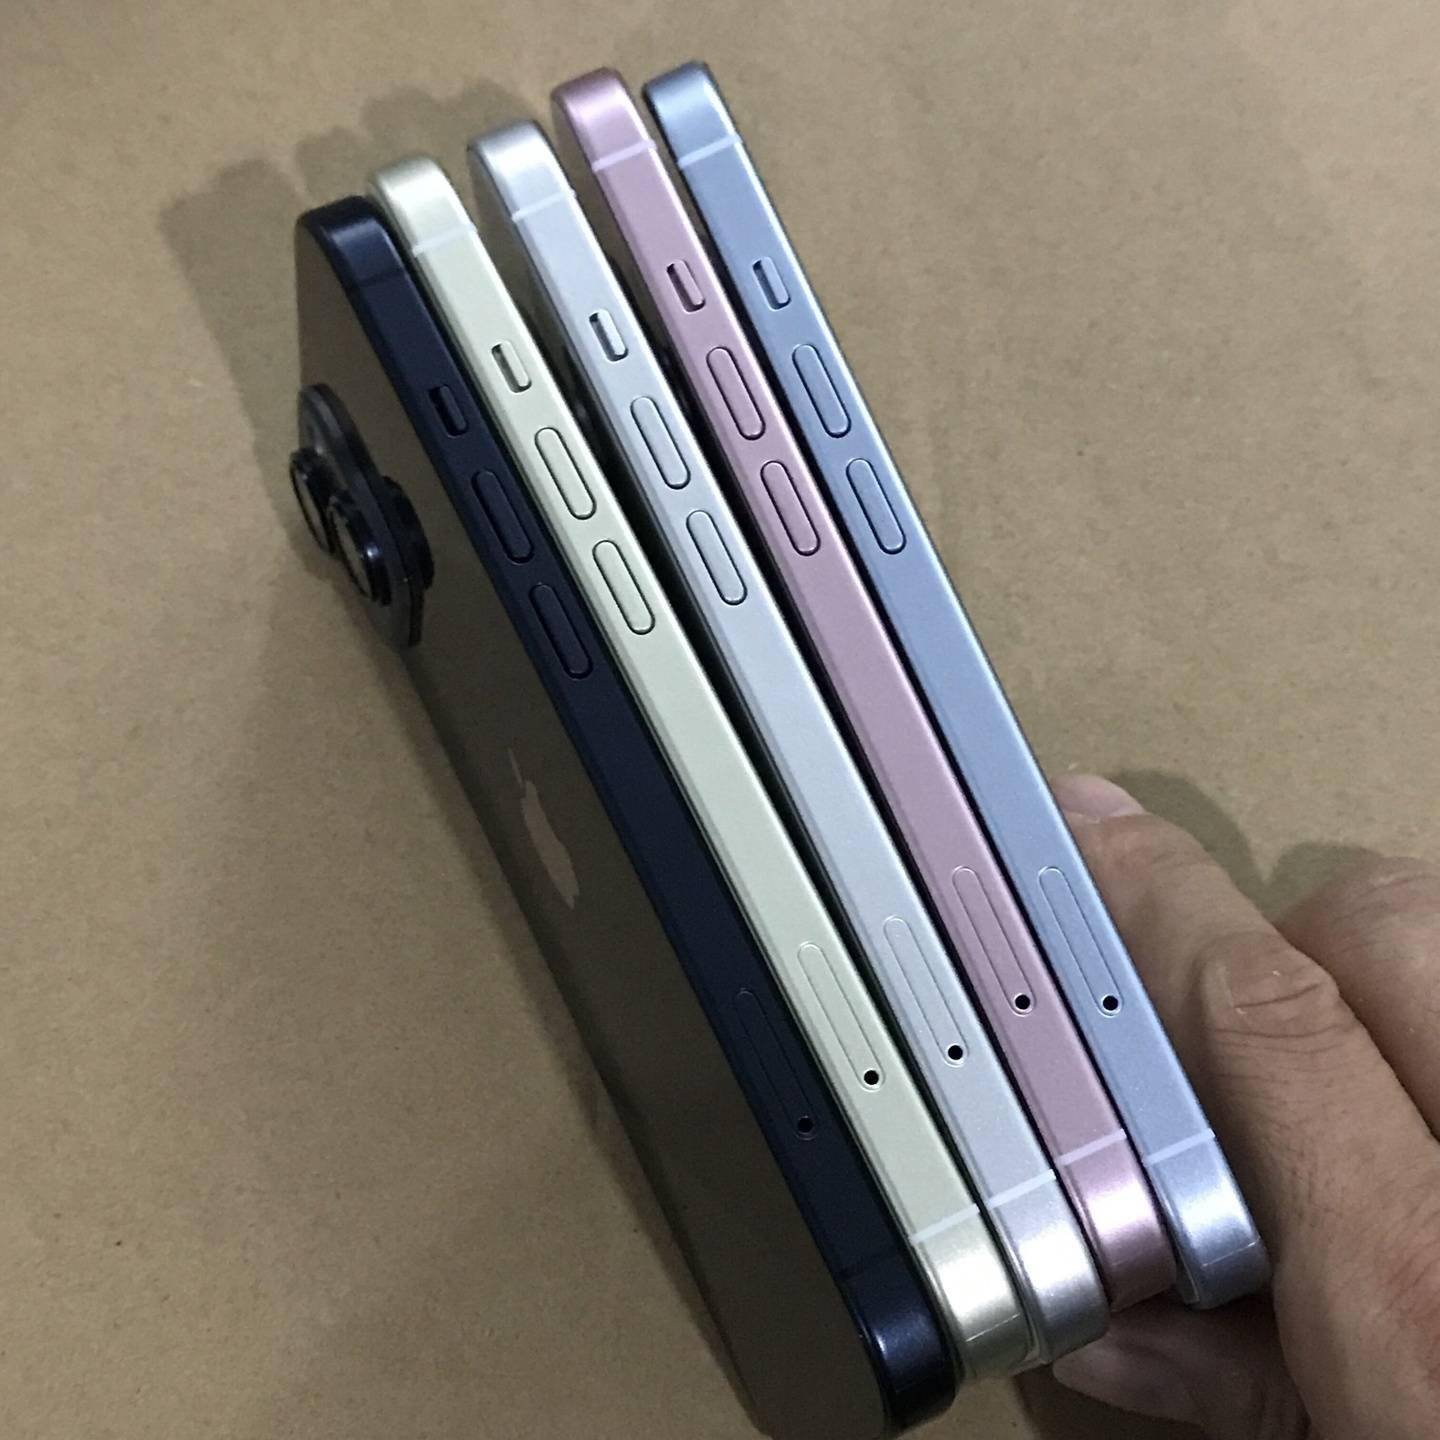 苹果 iPhone 15 和 iPhone 15 Pro 机模展示 新机颜色外观曝光图片 第6张